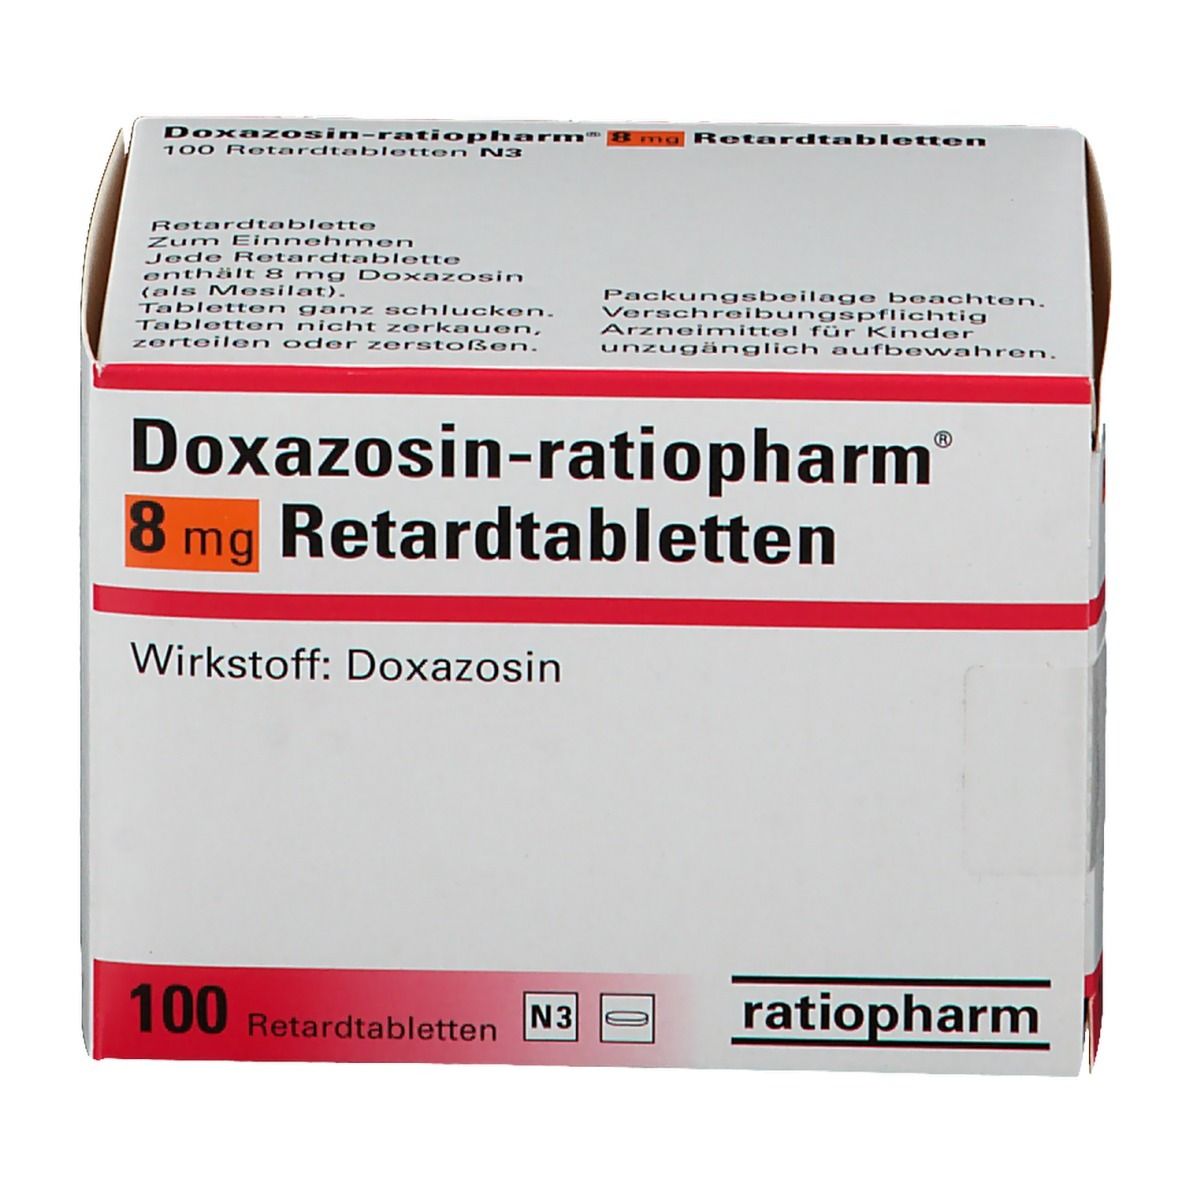 Doxazosin-ratiopharm® 8 mg